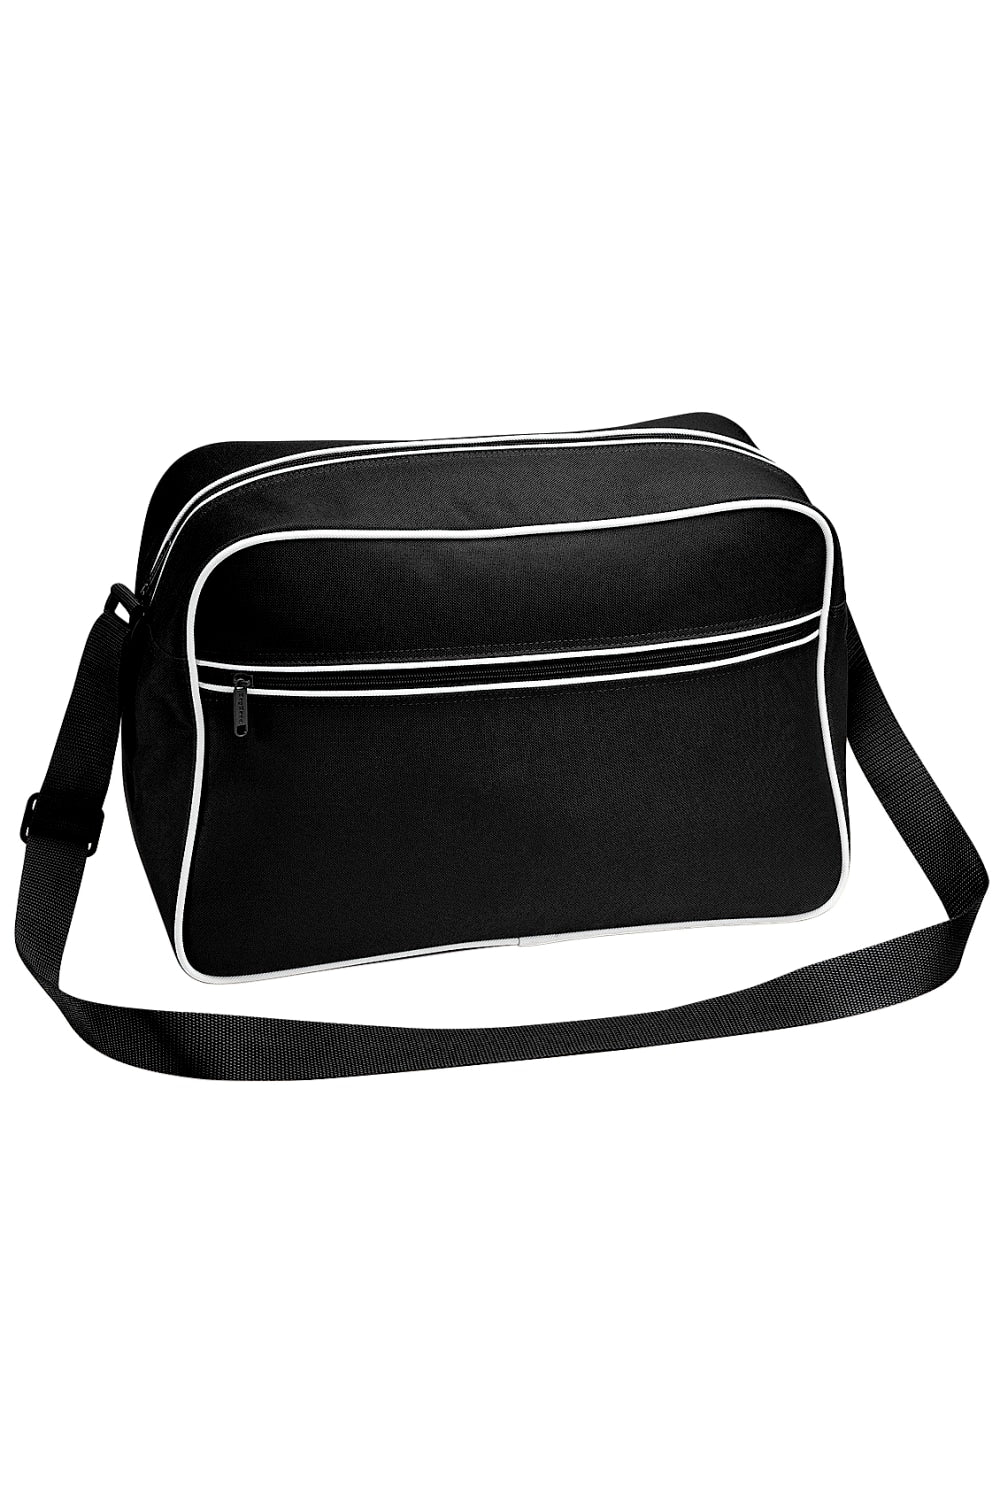 Retro Adjustable Shoulder Bag 18 Liters- Black/White